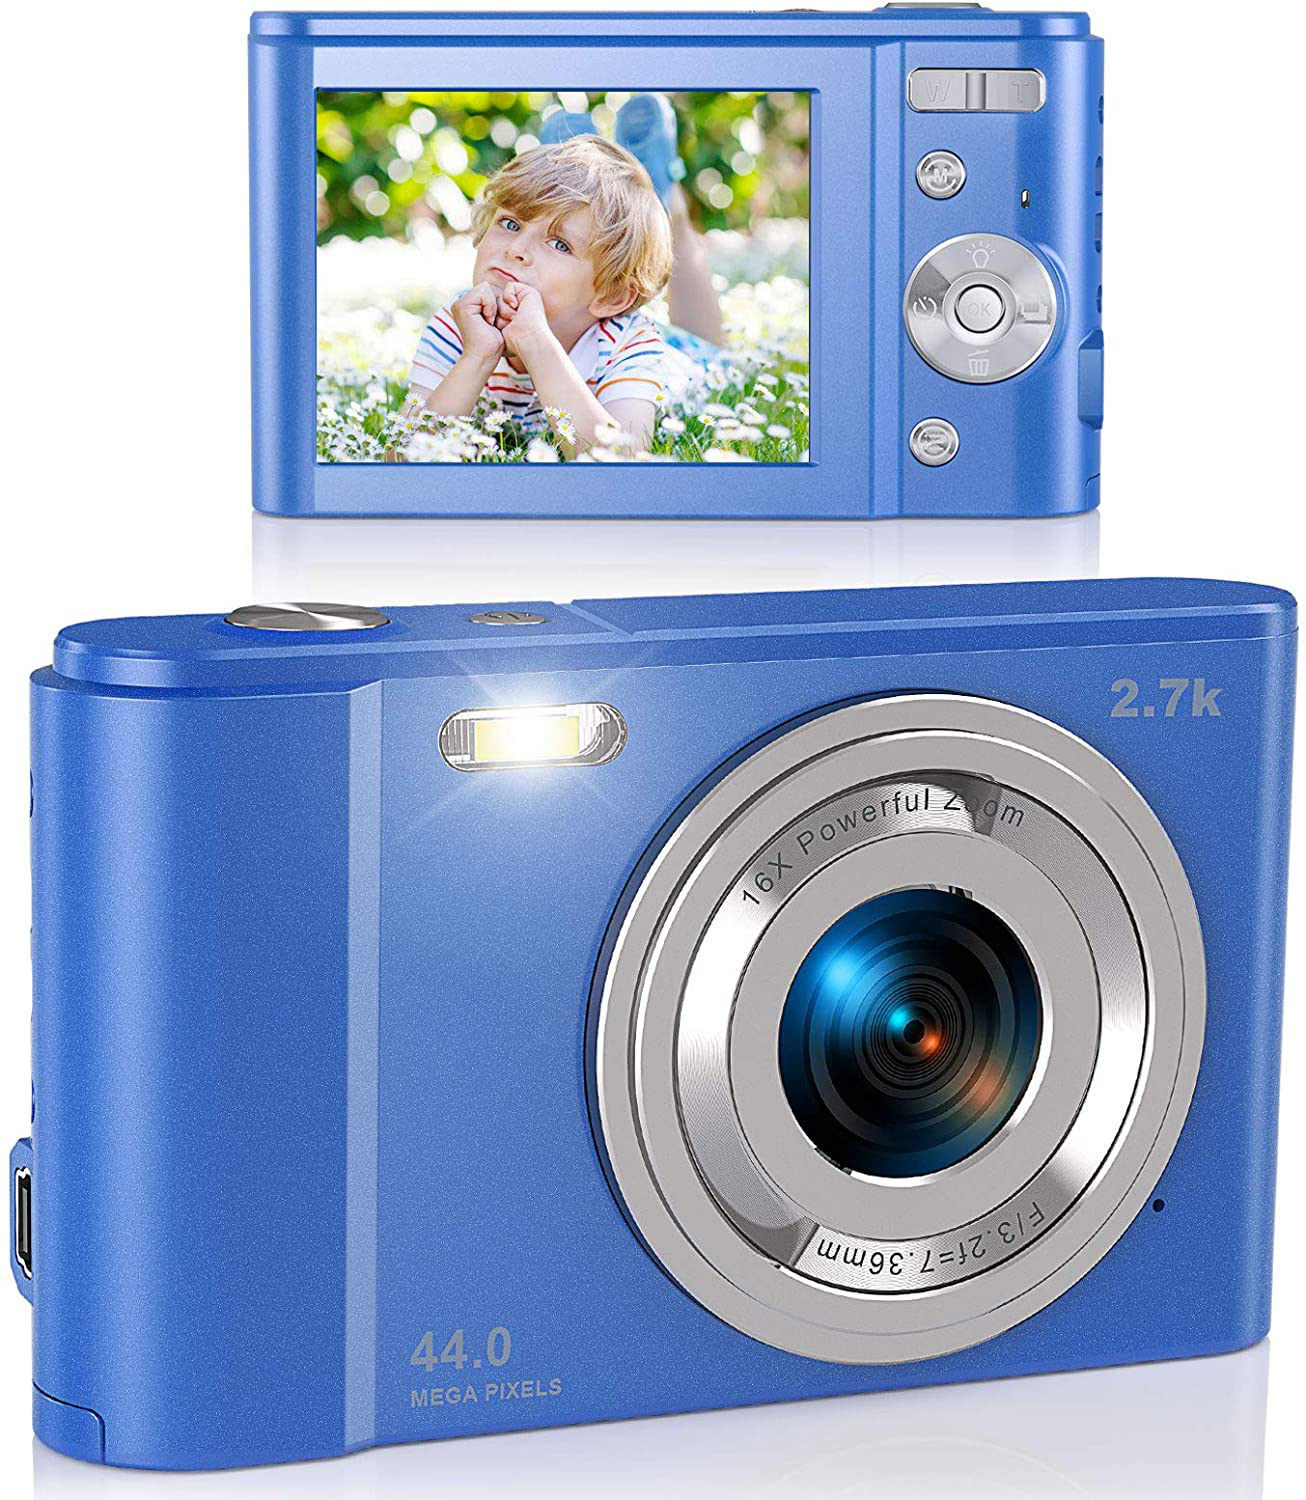 Digital Camera, Lecran FHD 1080P 36.0 Mega Pixels Vlogging Camera with 16X Digital Zoom, LCD Screen, Compact Portable Mini Cameras for Students, Teens, Kids